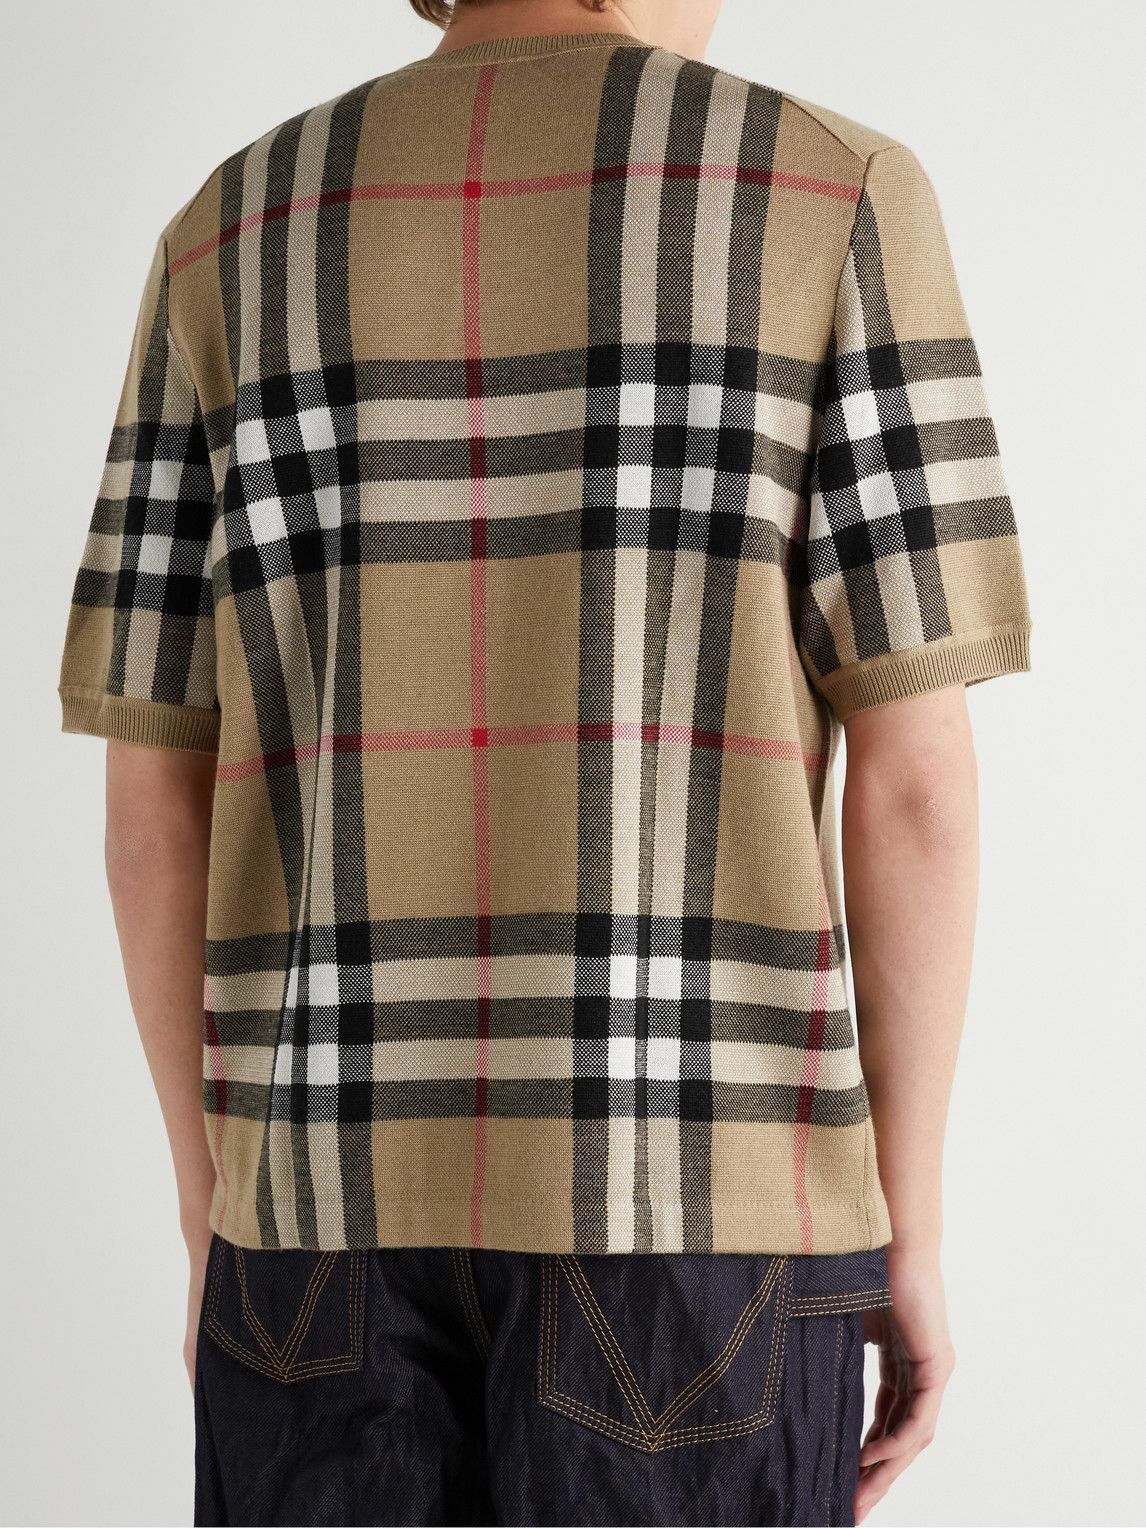 Burberry - Checked Birdseye Silk and Wool-Blend T-Shirt - Neutrals Burberry